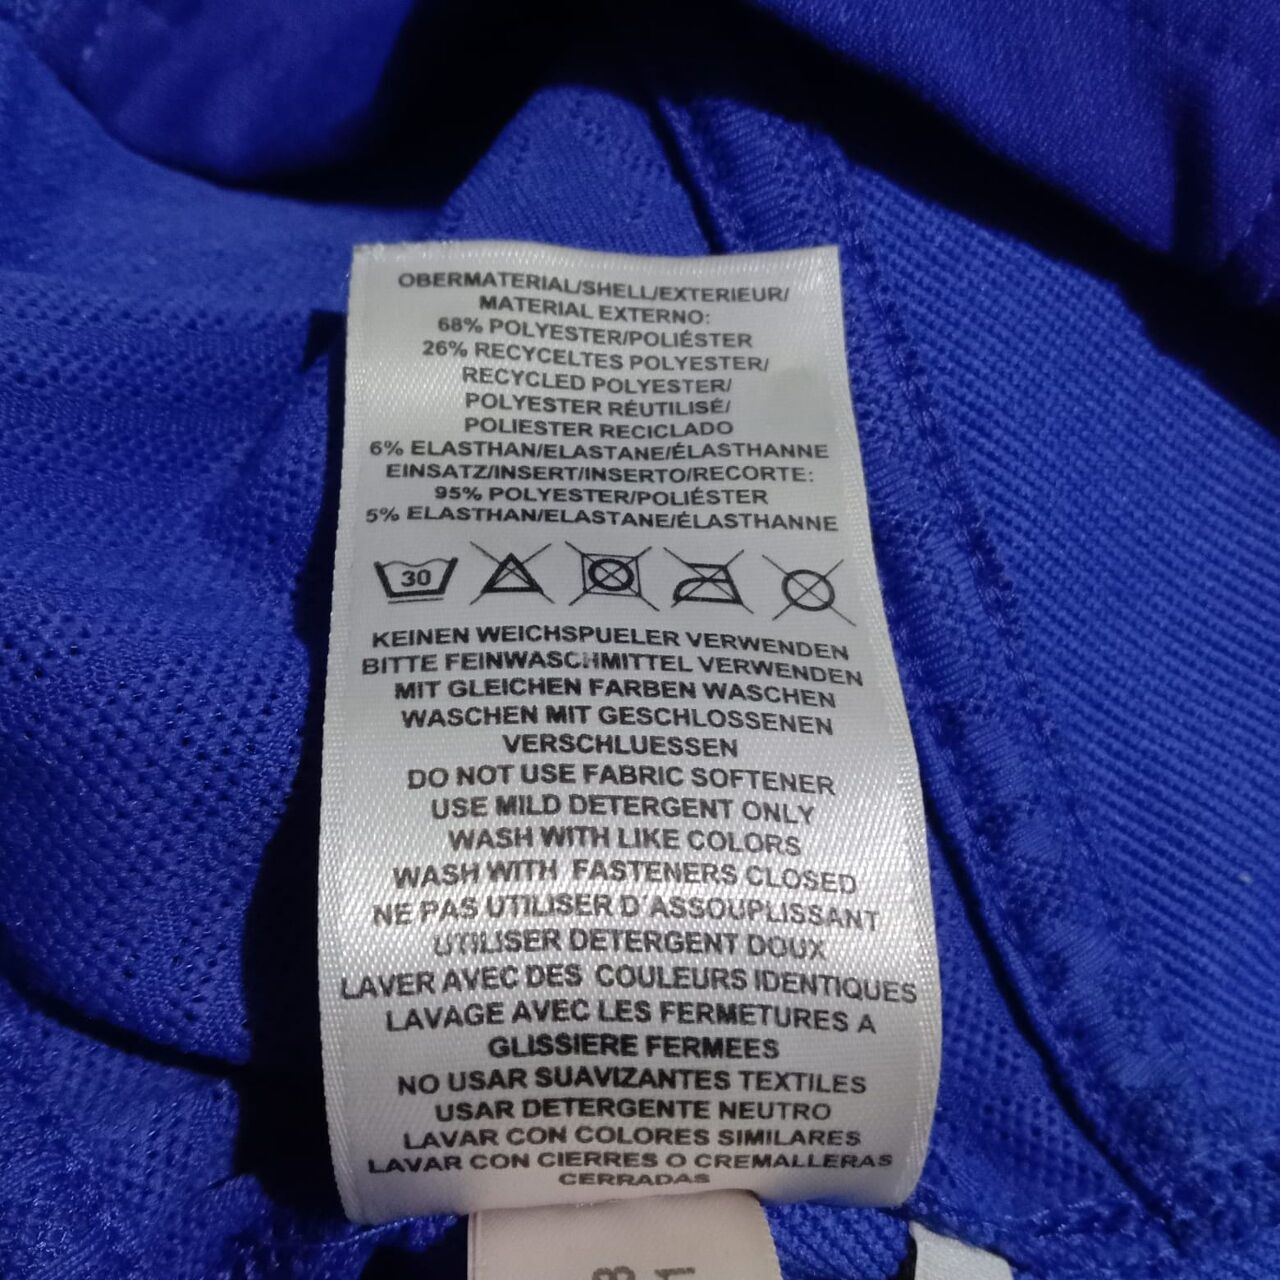 Adidas Blue Hoodie Jacket